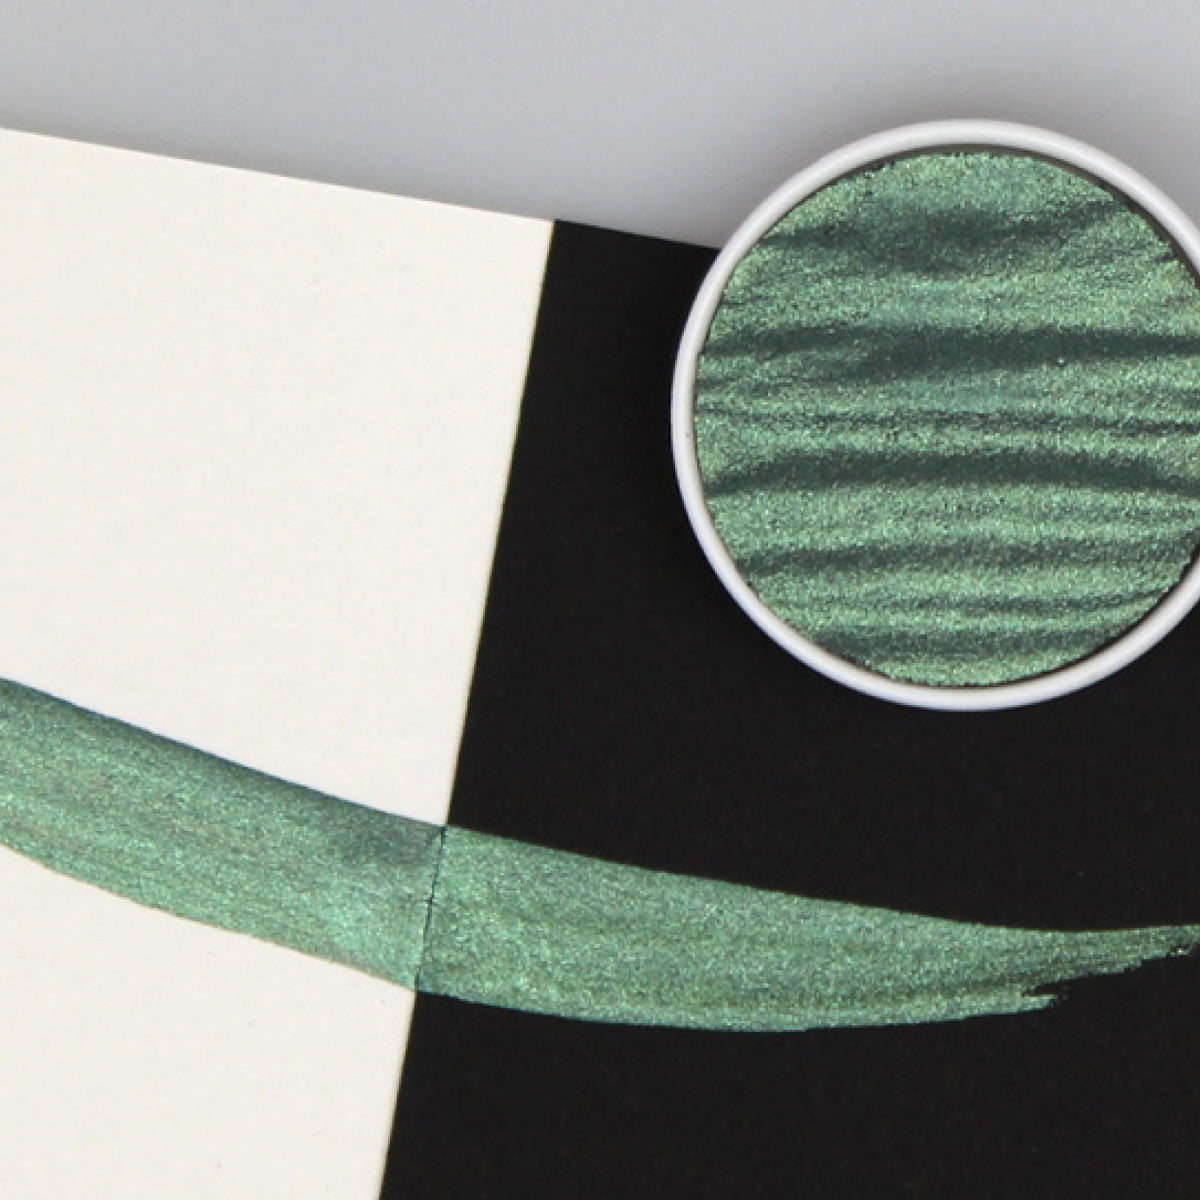 Finetec - Pearlcolor Mix - Moss Green